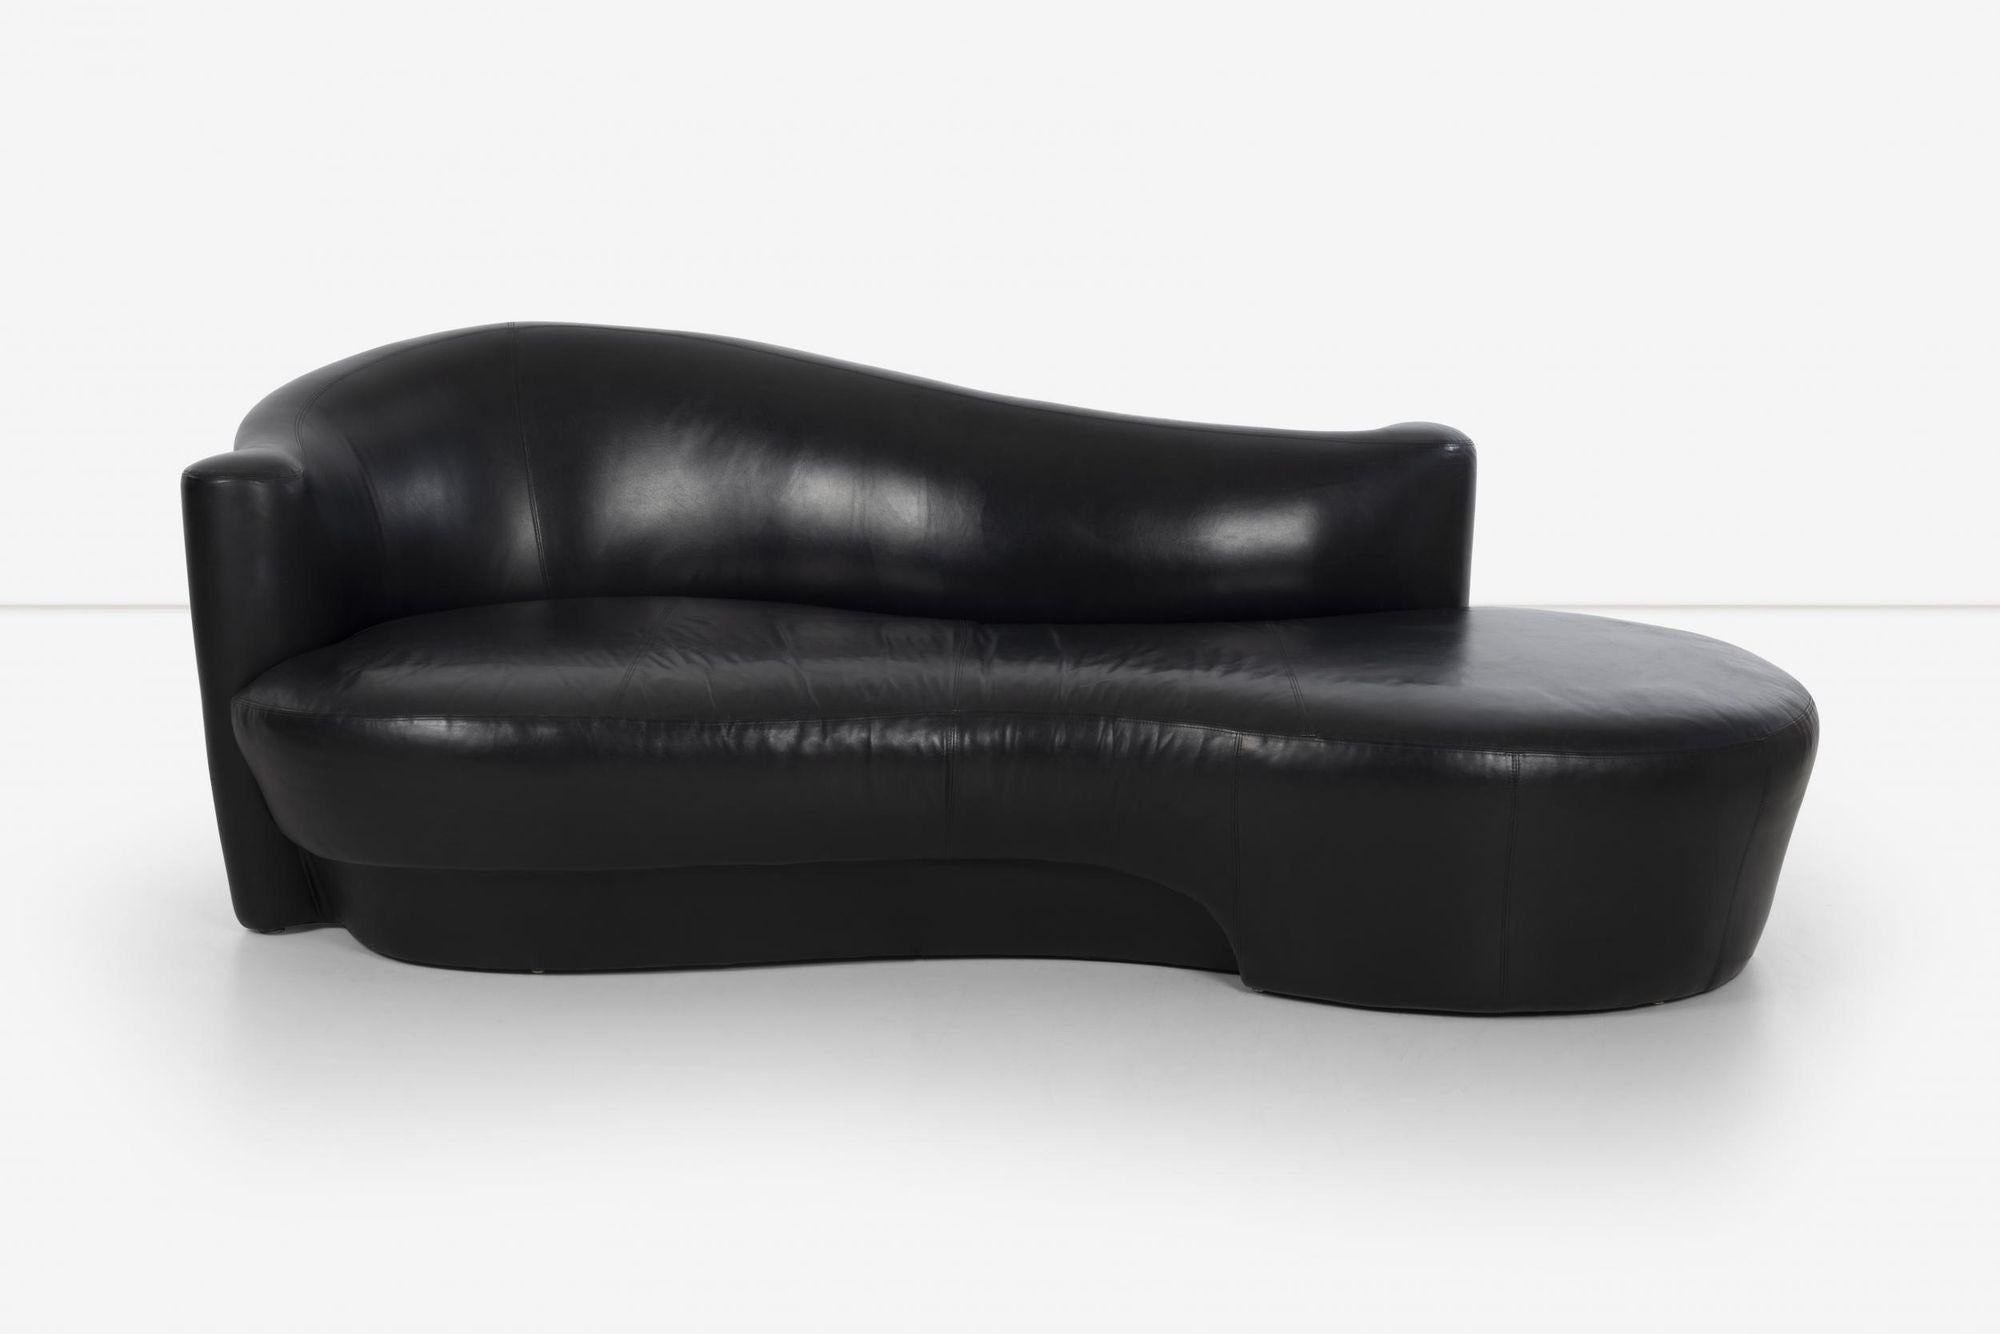 Weiman black leather sofas. Label underside Weiman.
Vladimir attributed